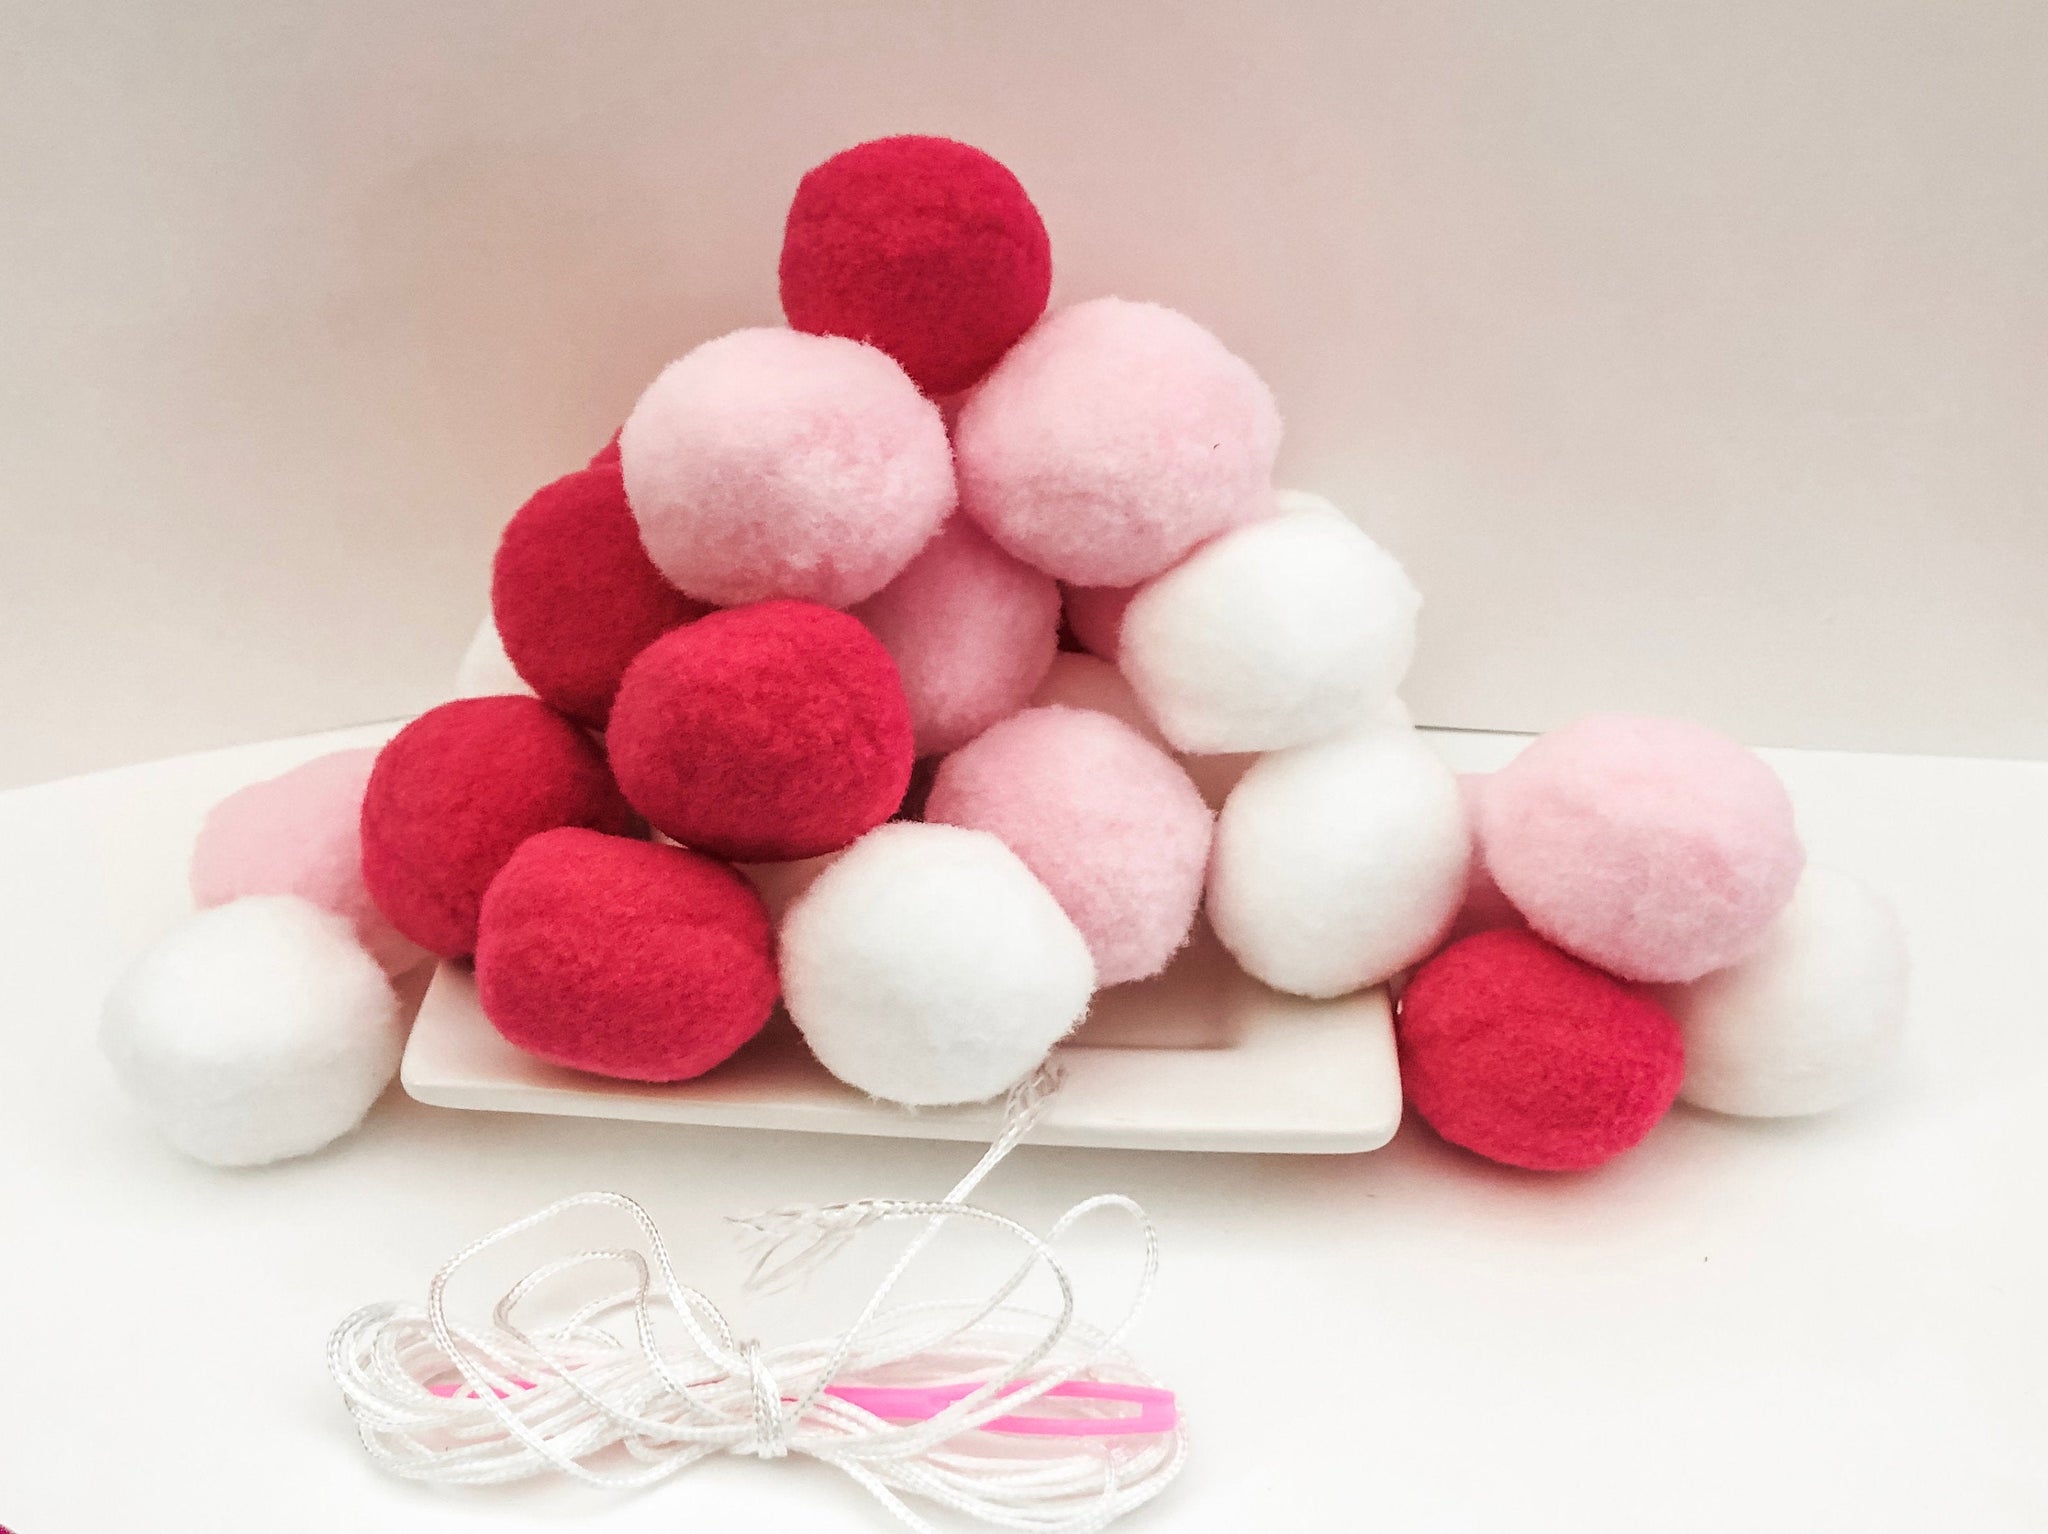 Magenta, Pink, and White Pom Pom Garland - DIY - 30 Pom Poms for a Custom Garland